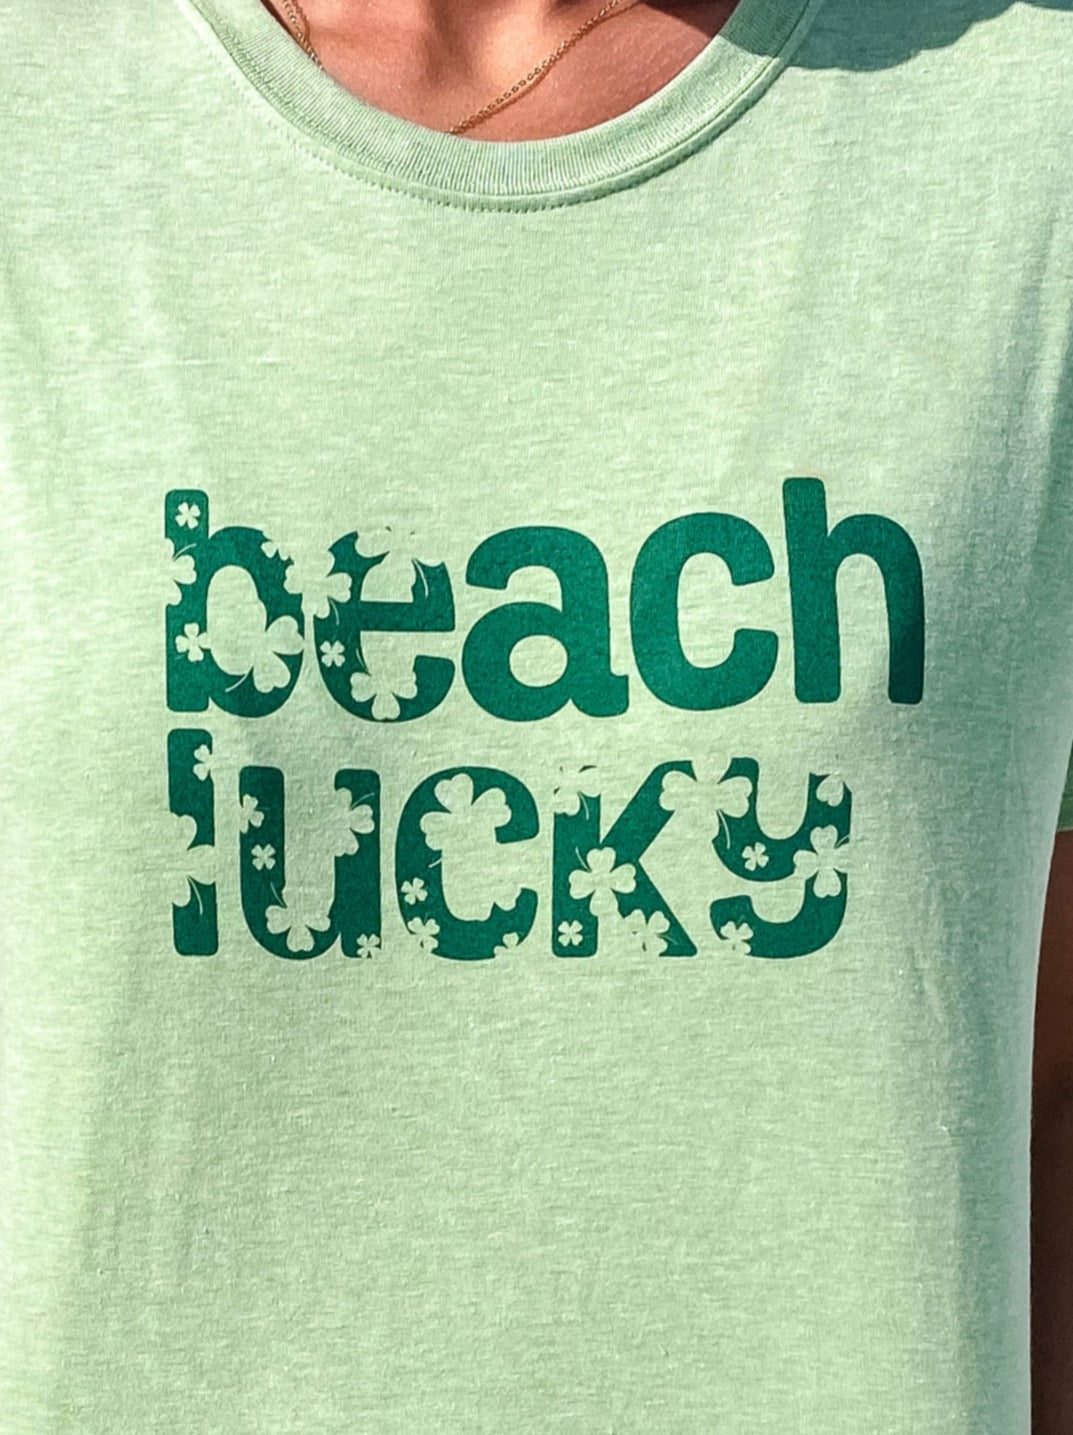 Beach Lucky Short Sleeve T-Shirt